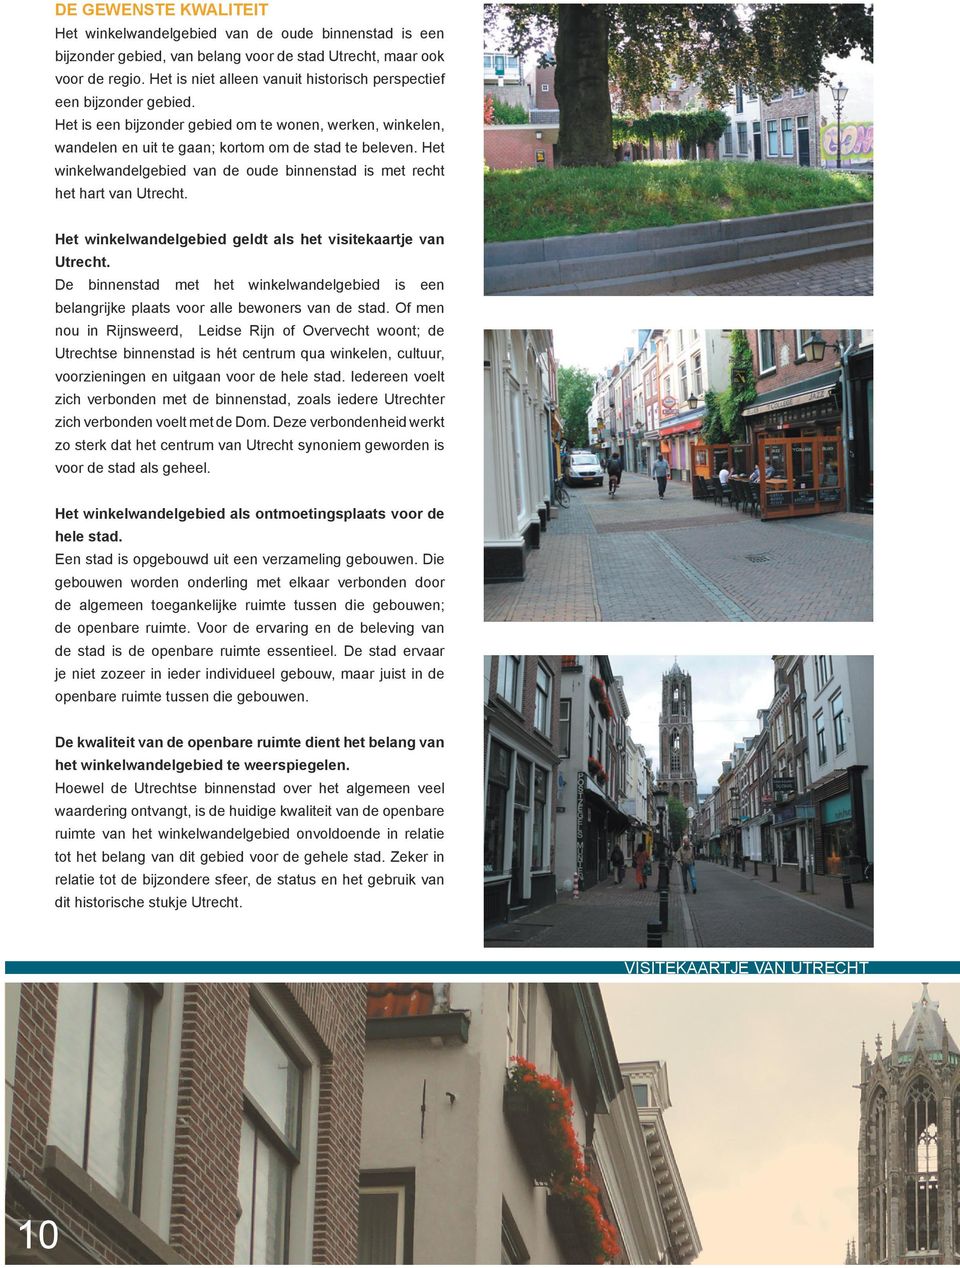 Het winkelwandelgebied van de oude binnenstad is met recht het hart van Utrecht. Het winkelwandelgebied geldt als het visitekaartje van Utrecht.